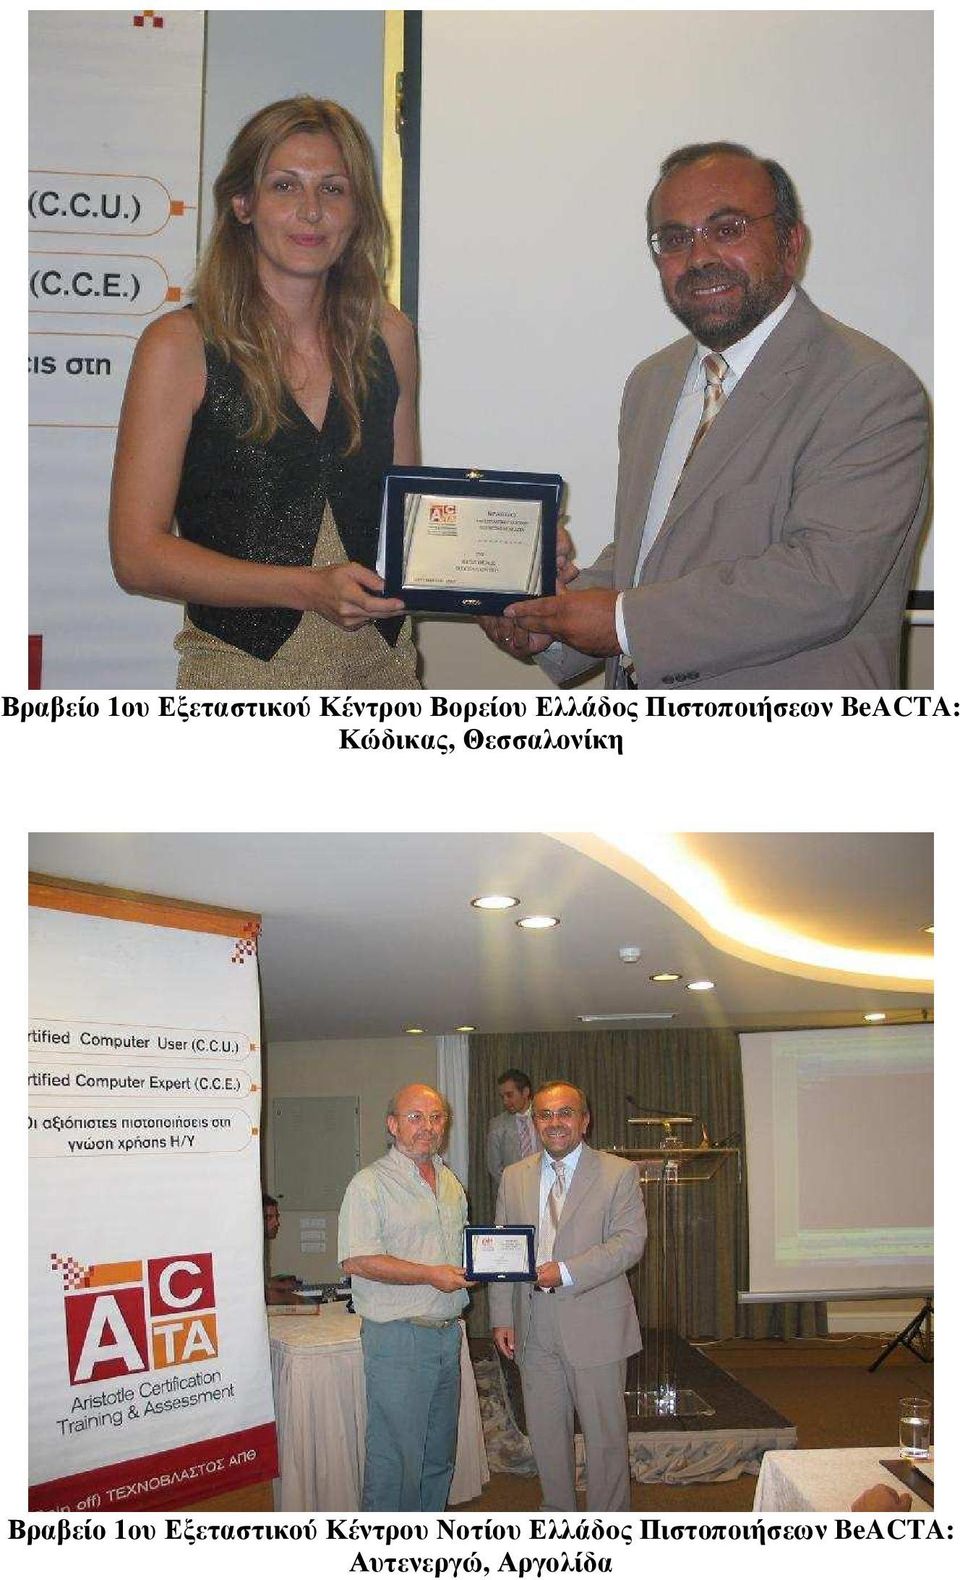 Θεσσαλονίκη Βραβείο 1ου Εξεταστικού Κέντρου